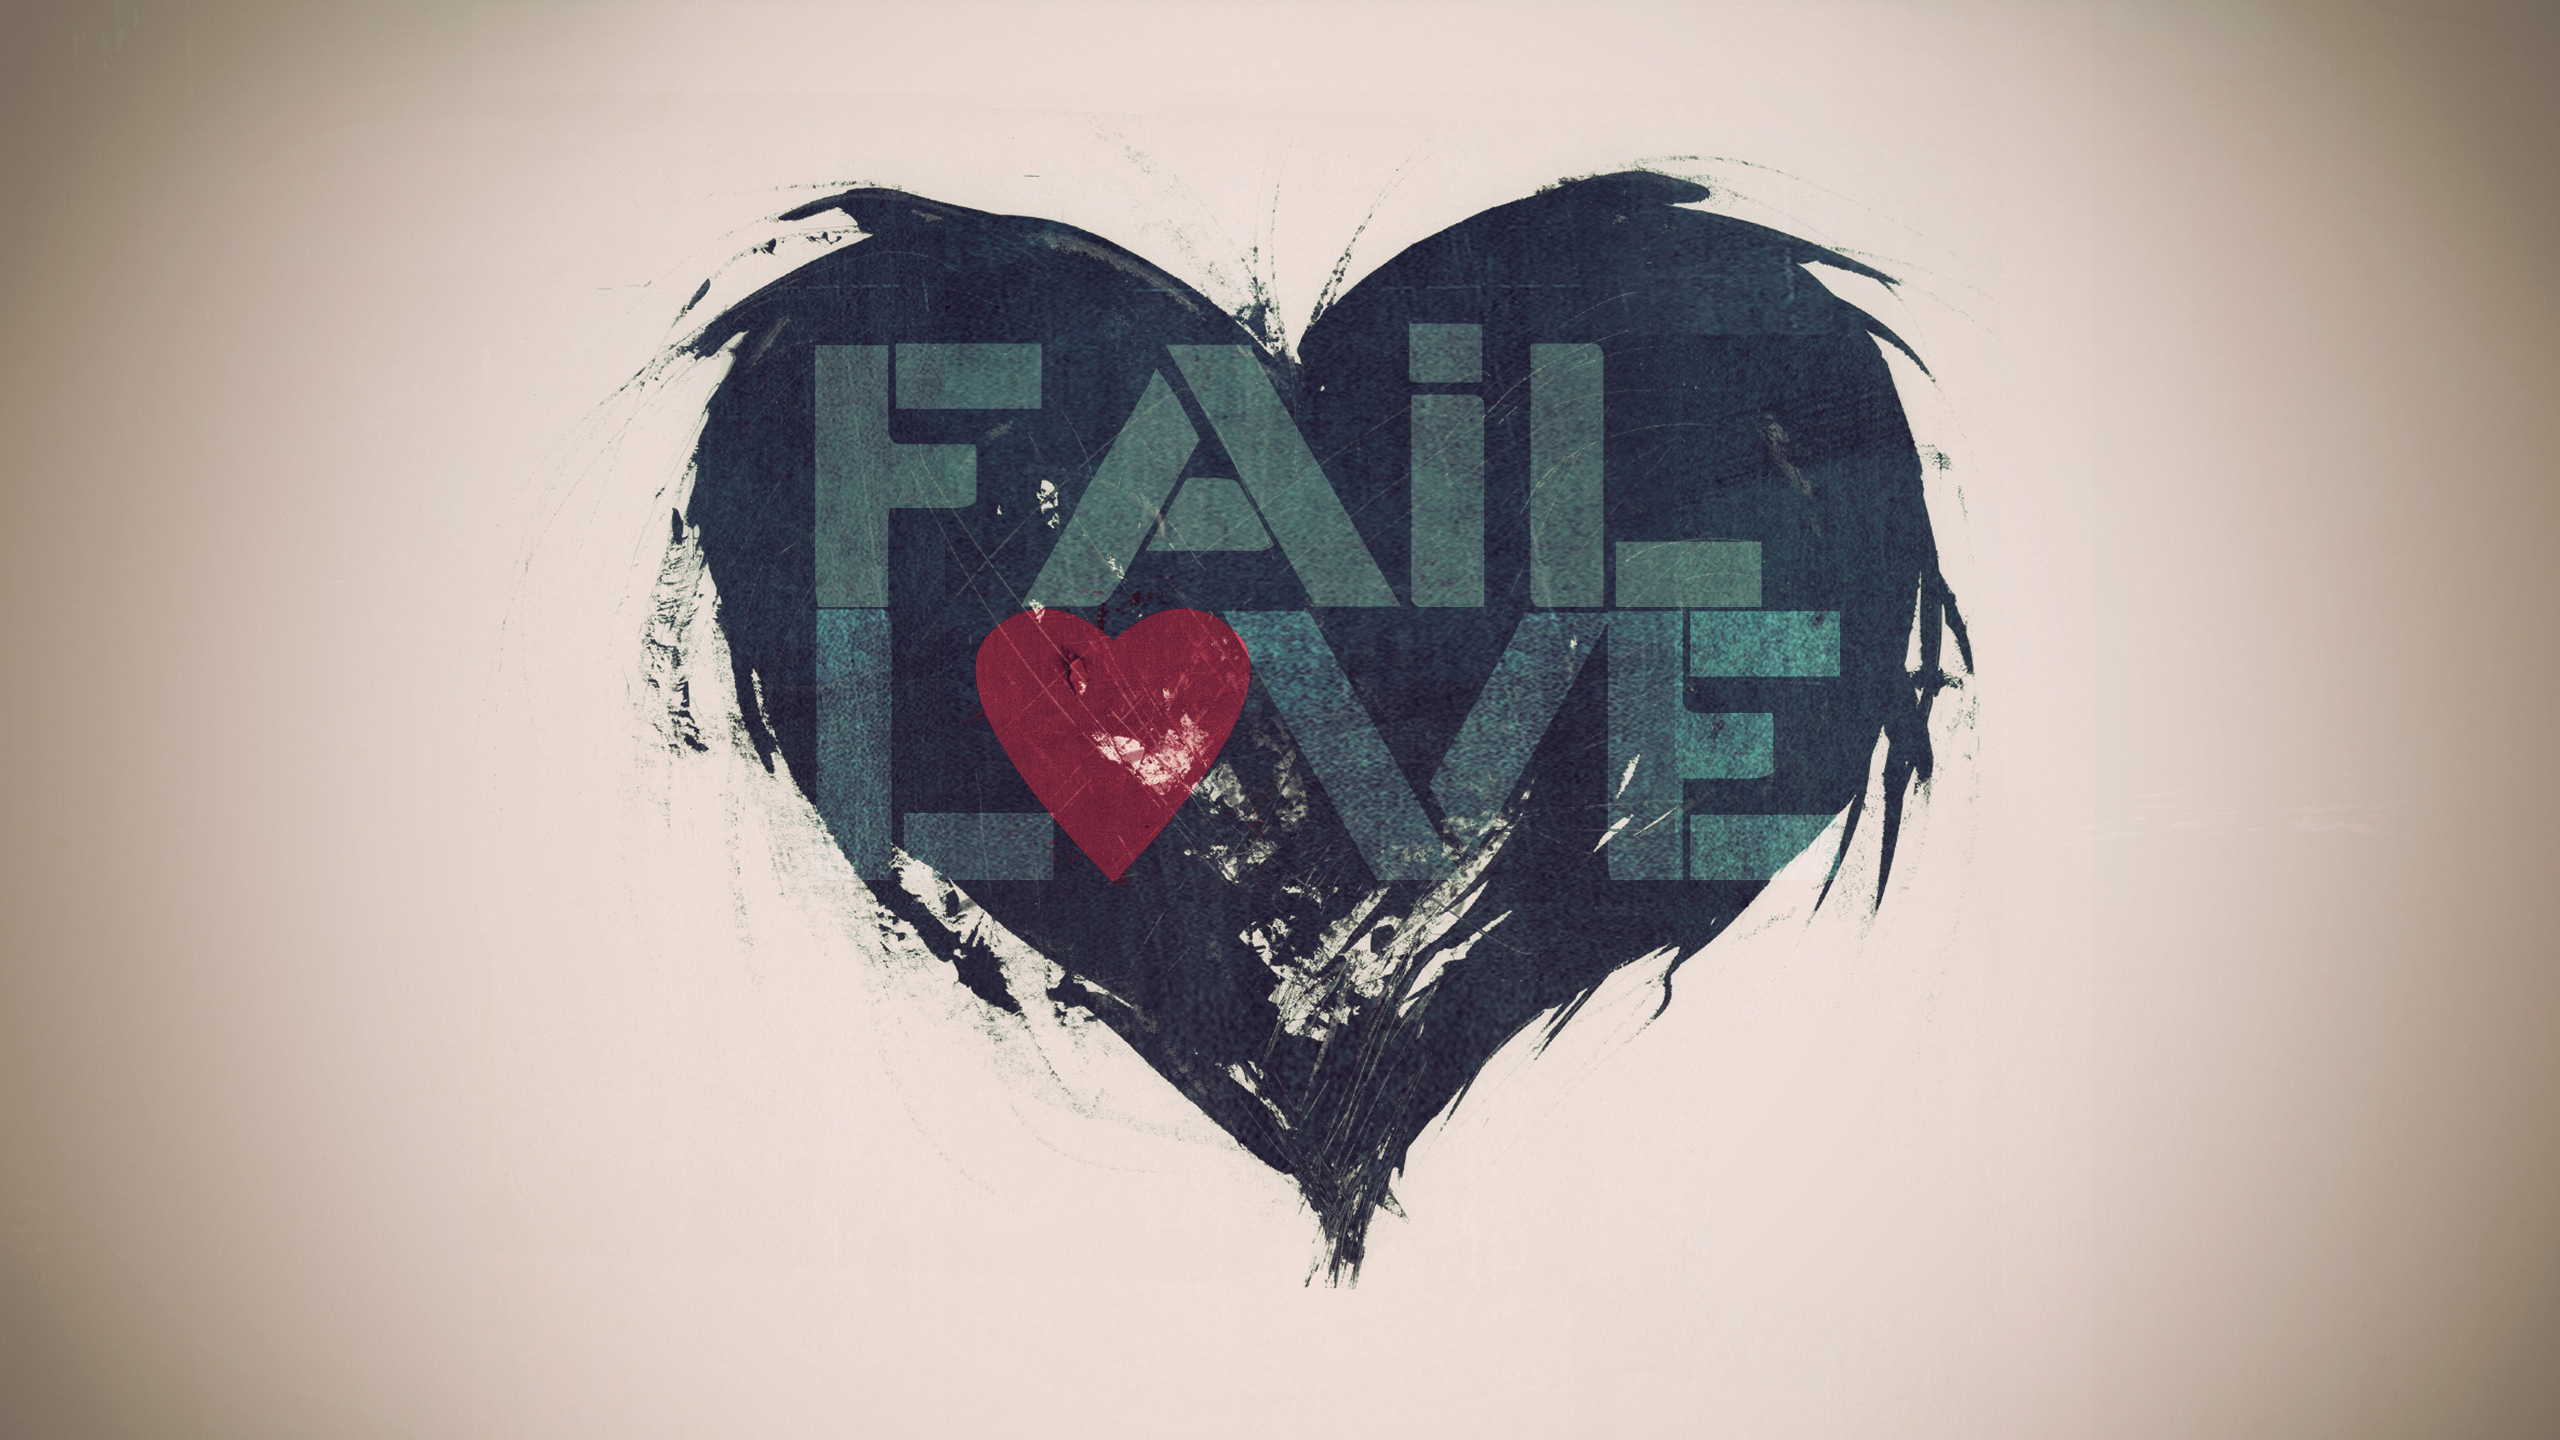 Fail Love